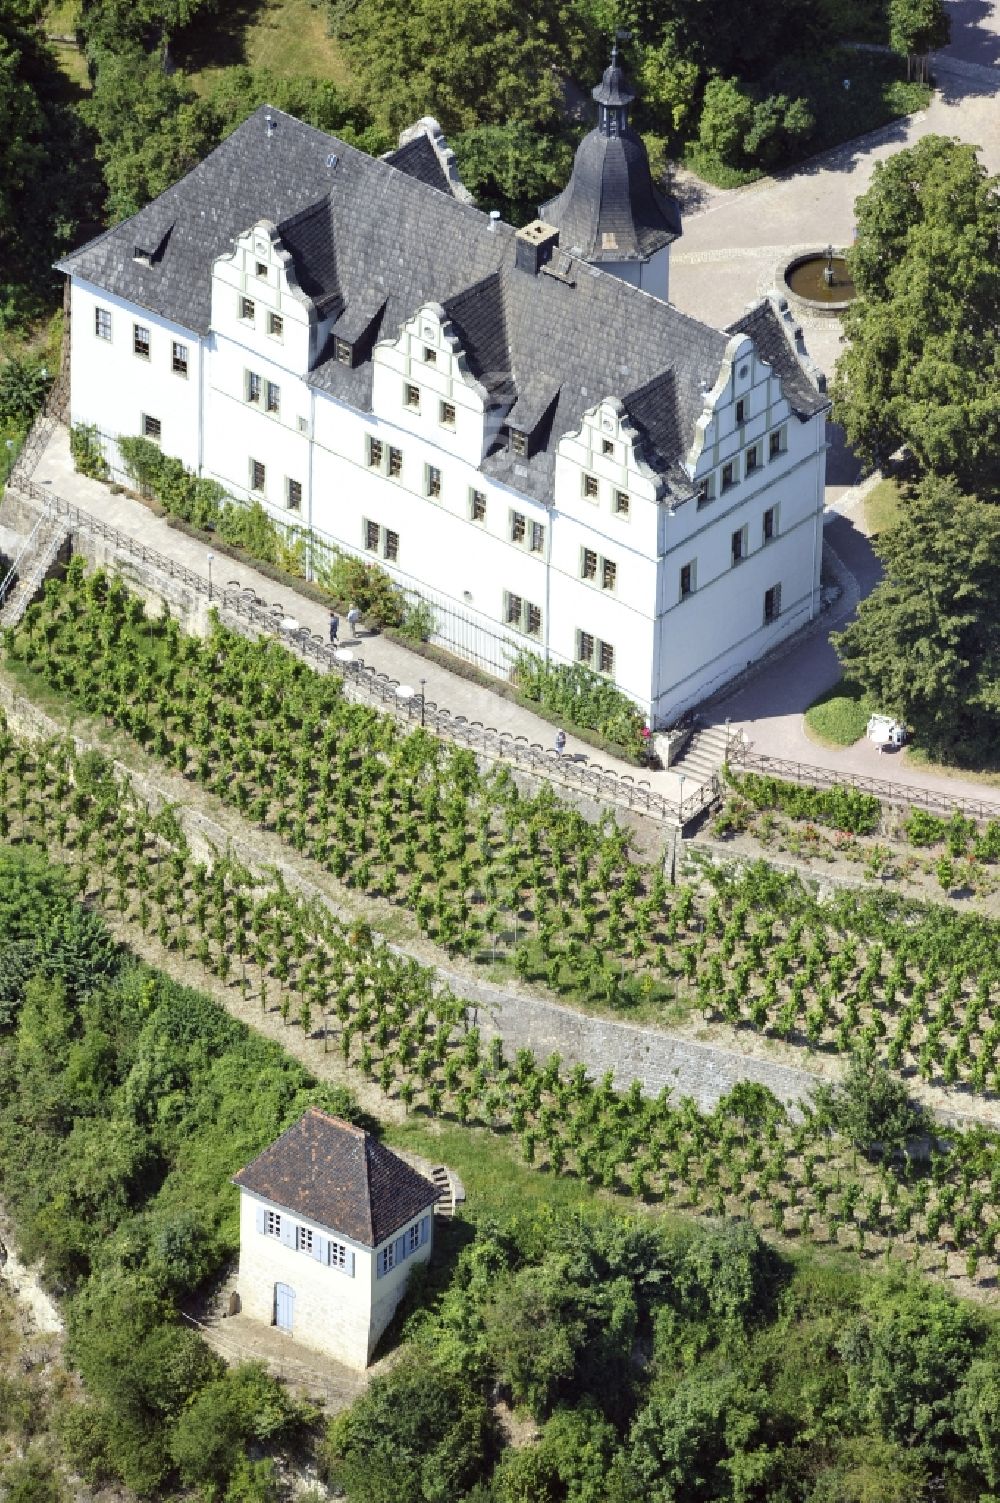 Aerial image Dornburg-Camburg - View of the Renaissance castle in Dornburg-Camburg in Thuringia